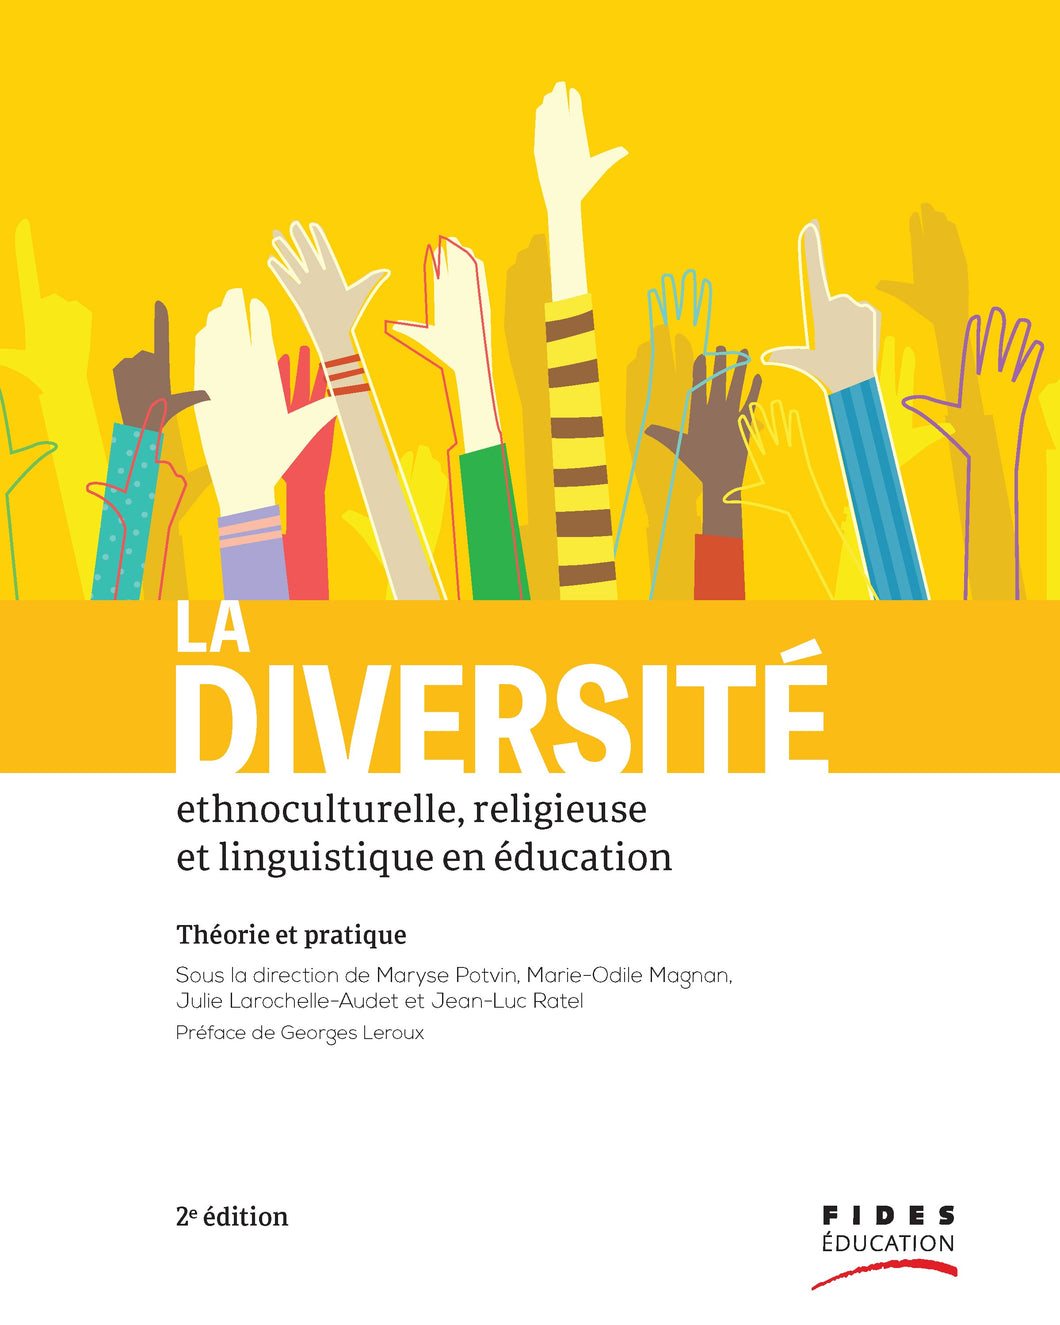 La diversité ethnoculturelle, religieuse et linguistique en éducation 2e édition